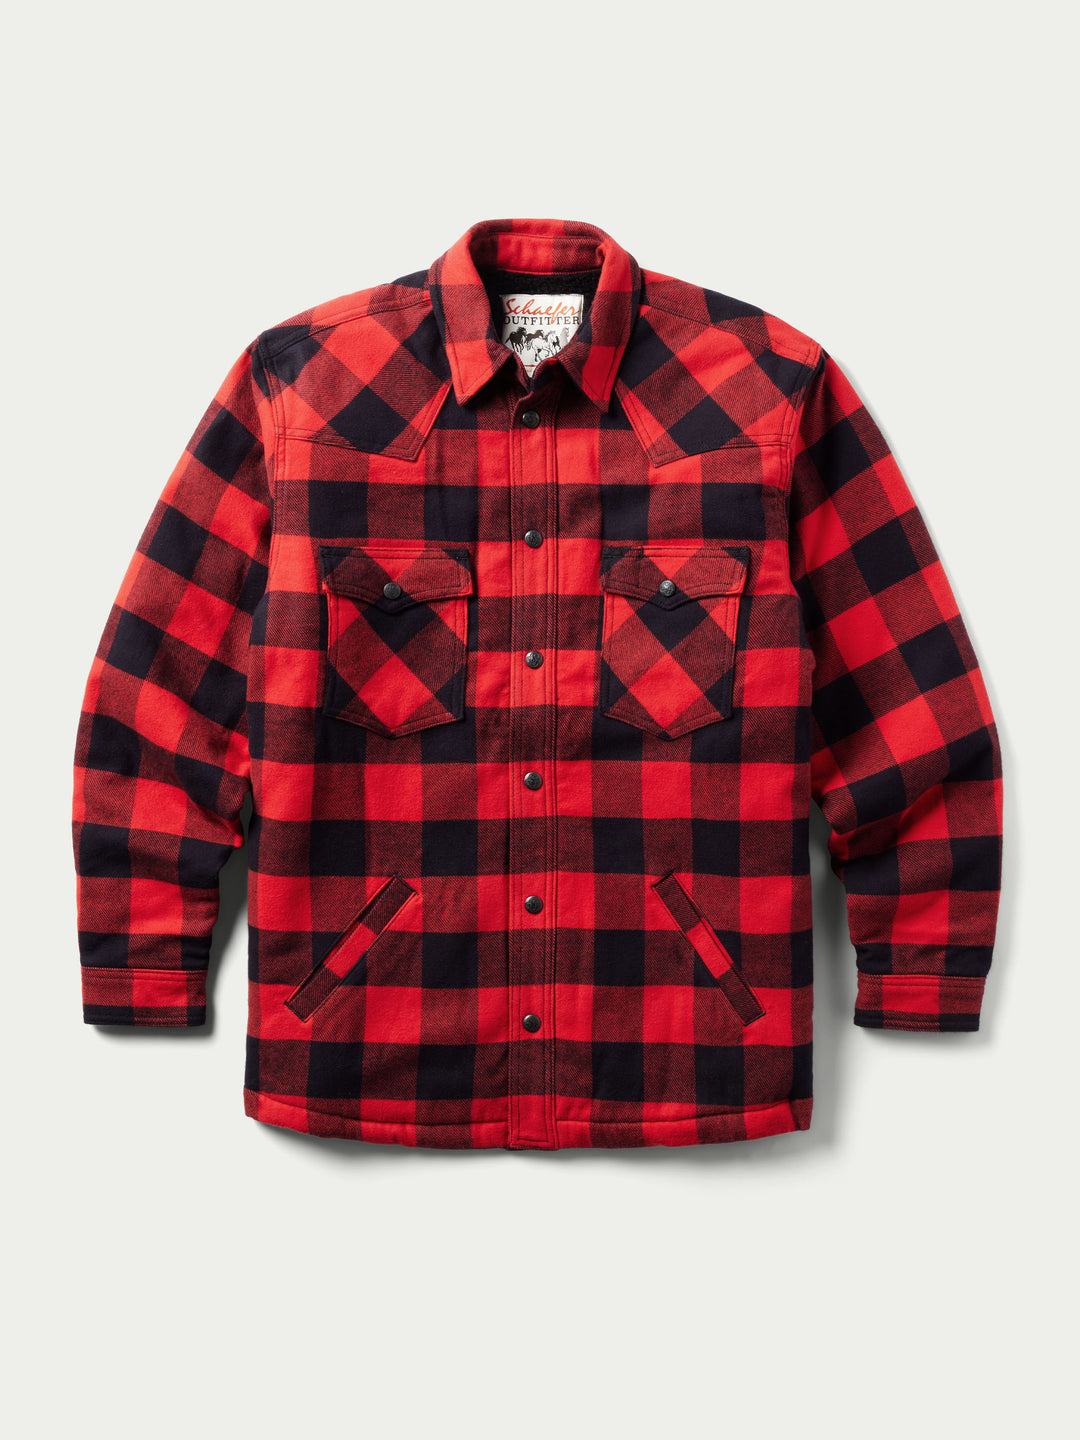 Huron Shirt Jacket - Schaefer Outfitter